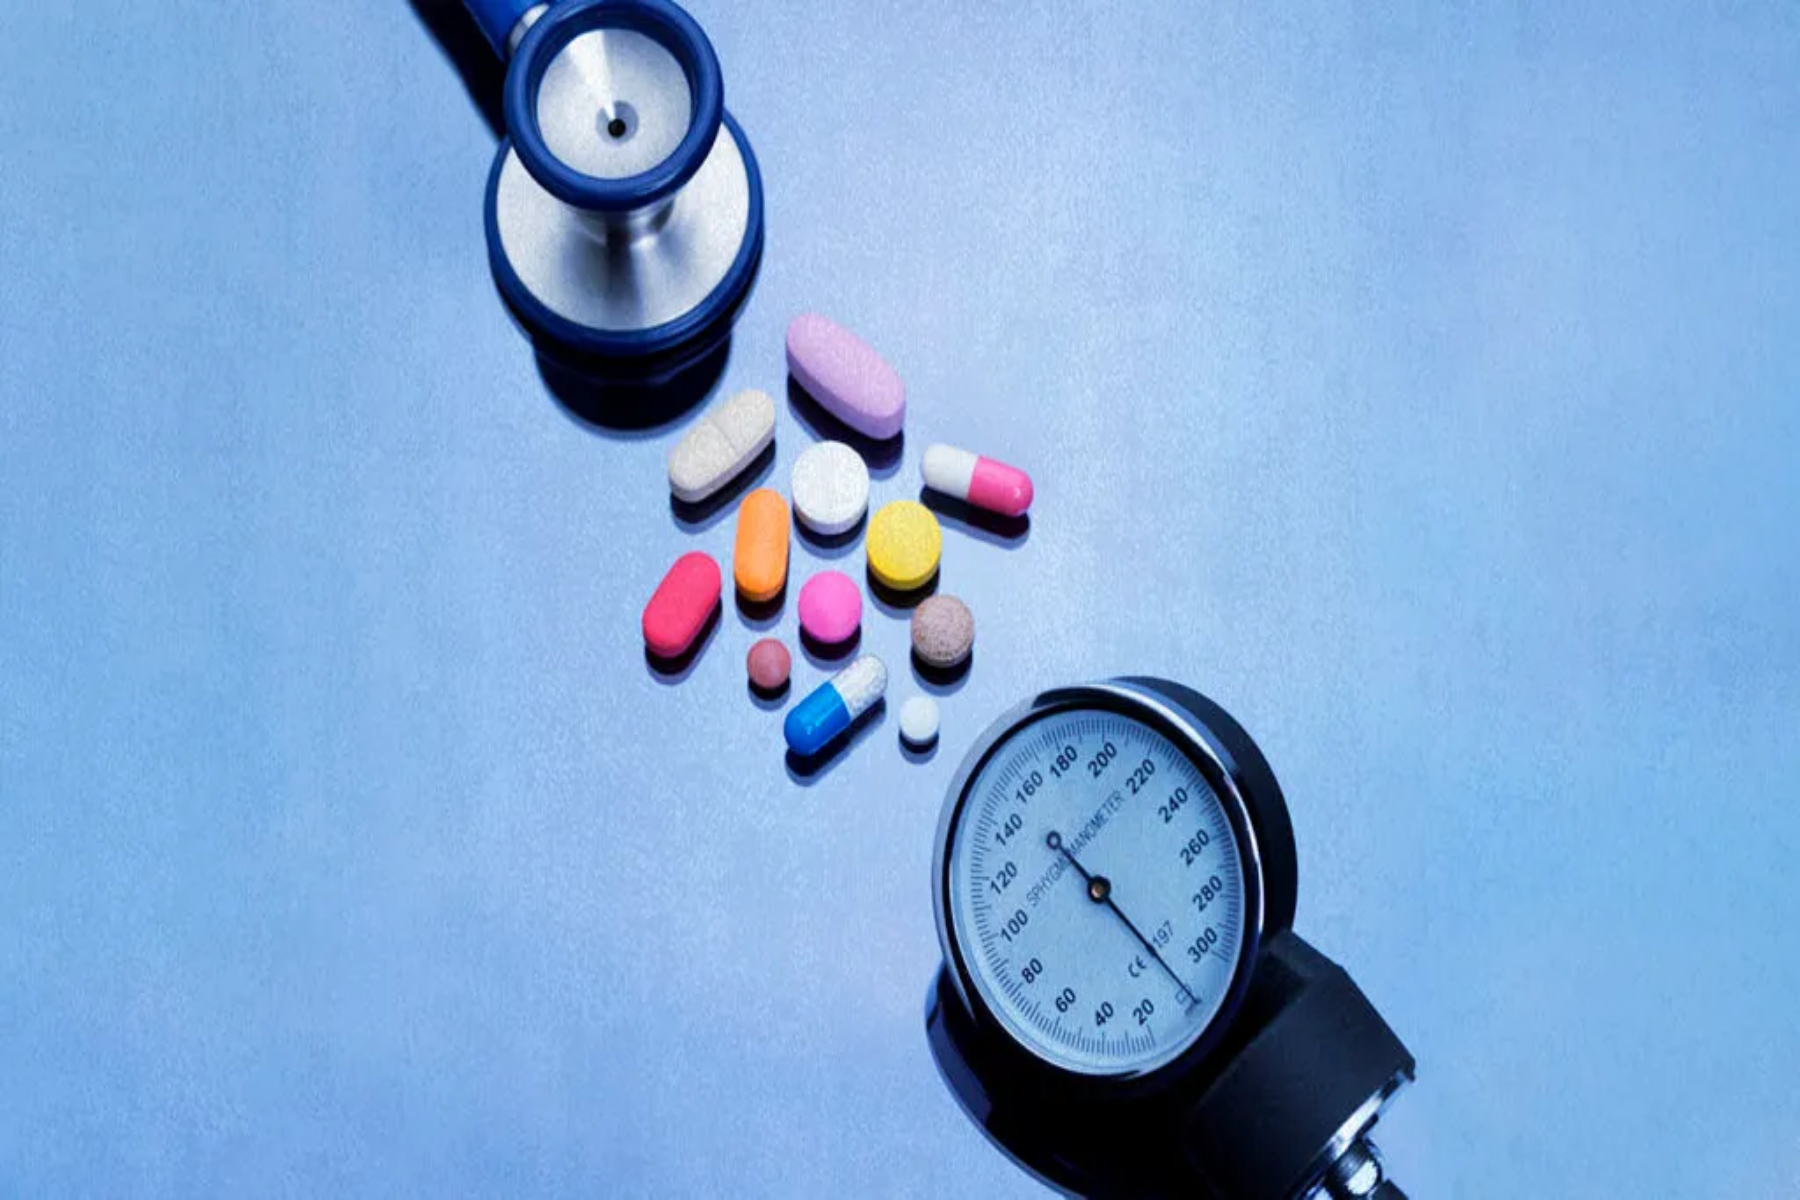 Αρτηριακή πίεση: Έρευνα μελετά αν παίζει ρόλο η ώρα που παίρνουμε το χάπι της πίεσης